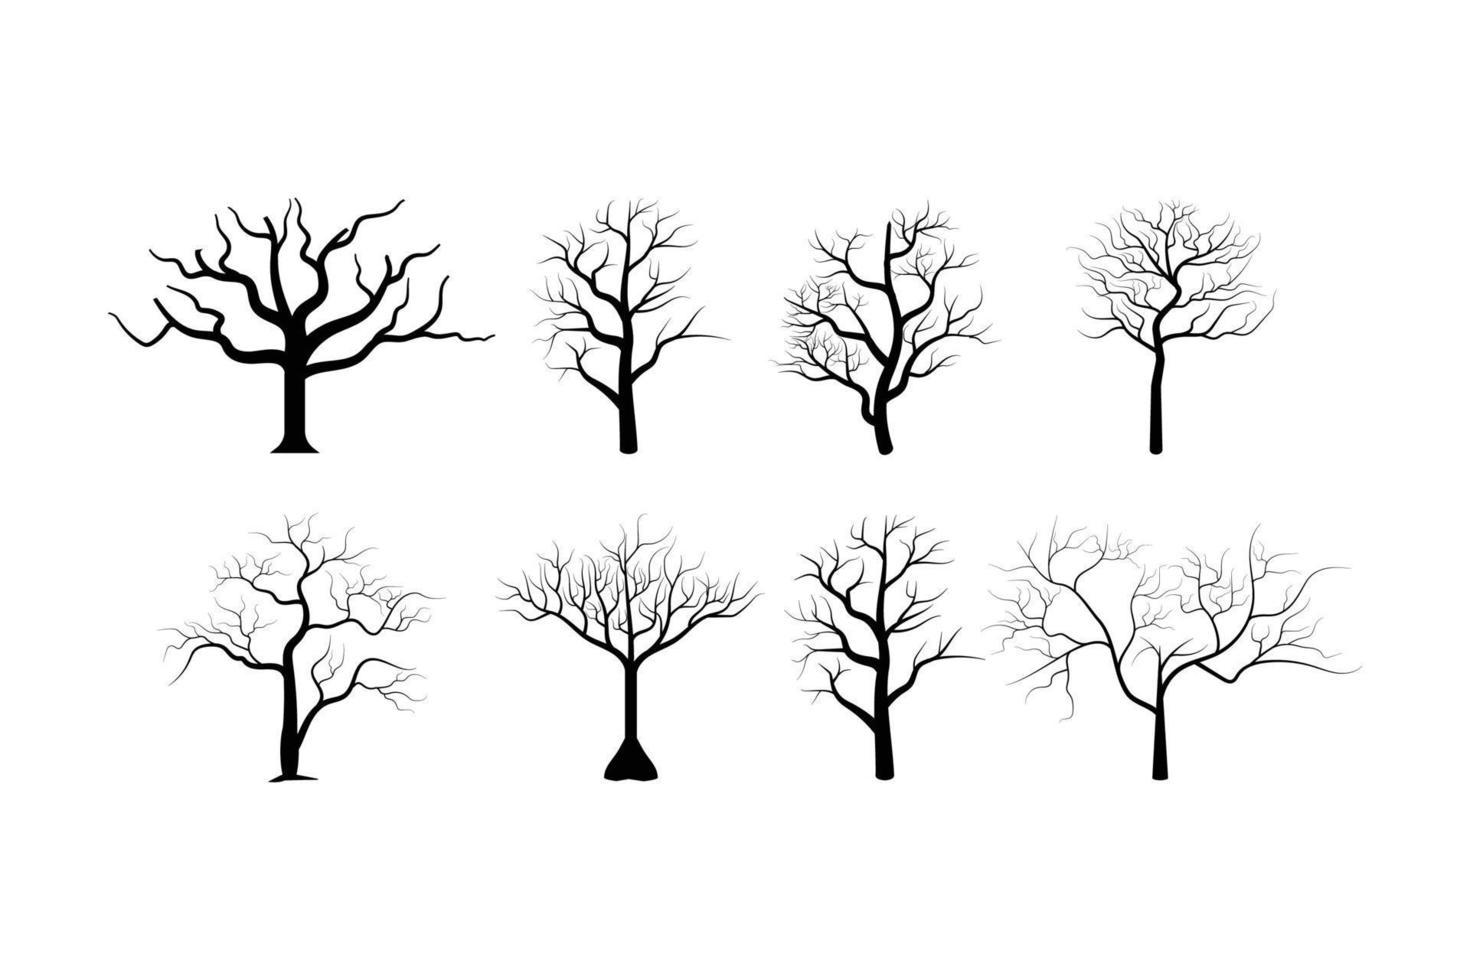 toter Baum Silhouetten Vektor. sterbendes schwarzes gruseliges gruseliges waldillustrationsbild der bäume vektor